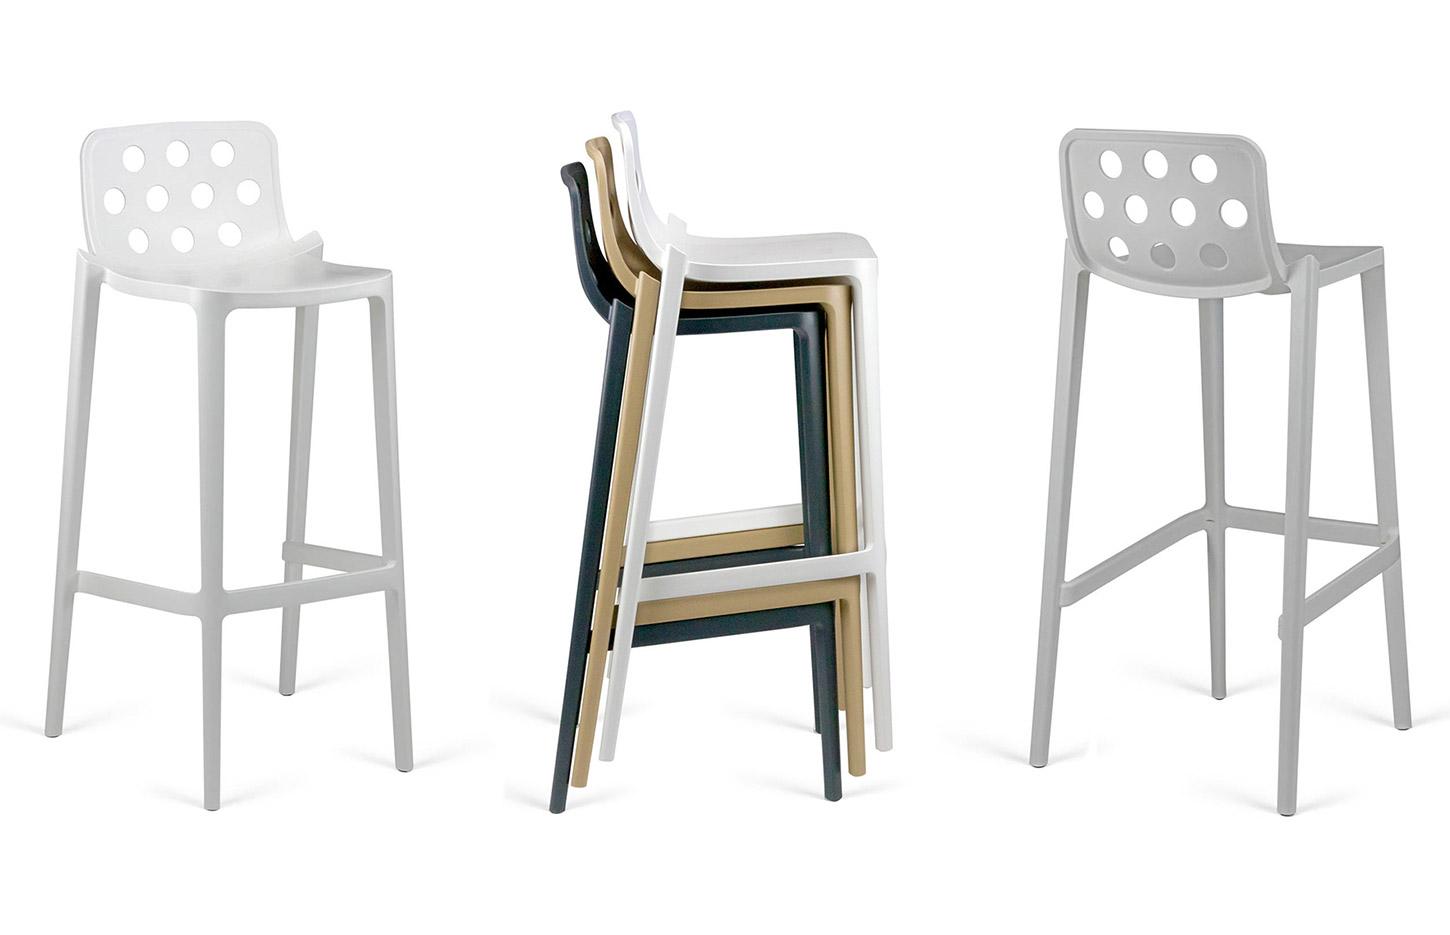 Table et chaise d\'extérieur tabouret empilable, gamme Neva - France Bureau